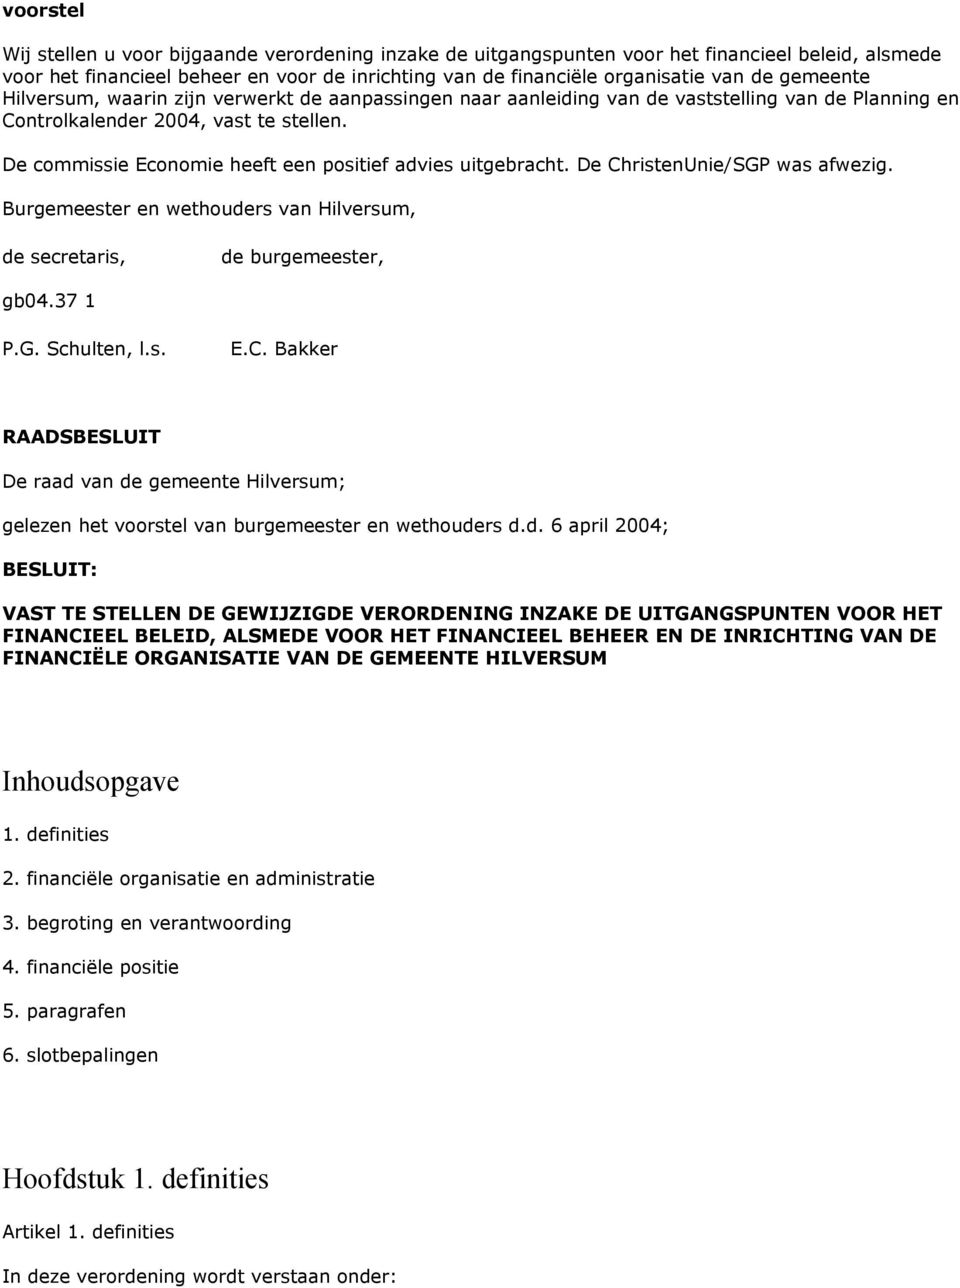 De commissie Economie heeft een positief advies uitgebracht. De ChristenUnie/SGP was afwezig. Burgemeester en wethouders van Hilversum, de secretaris, de burgemeester, gb04.37 1 P.G. Schulten, l.s. E.C. Bakker RAADSBESLUIT De raad van de gemeente Hilversum; gelezen het voorstel van burgemeester en wethouders d.